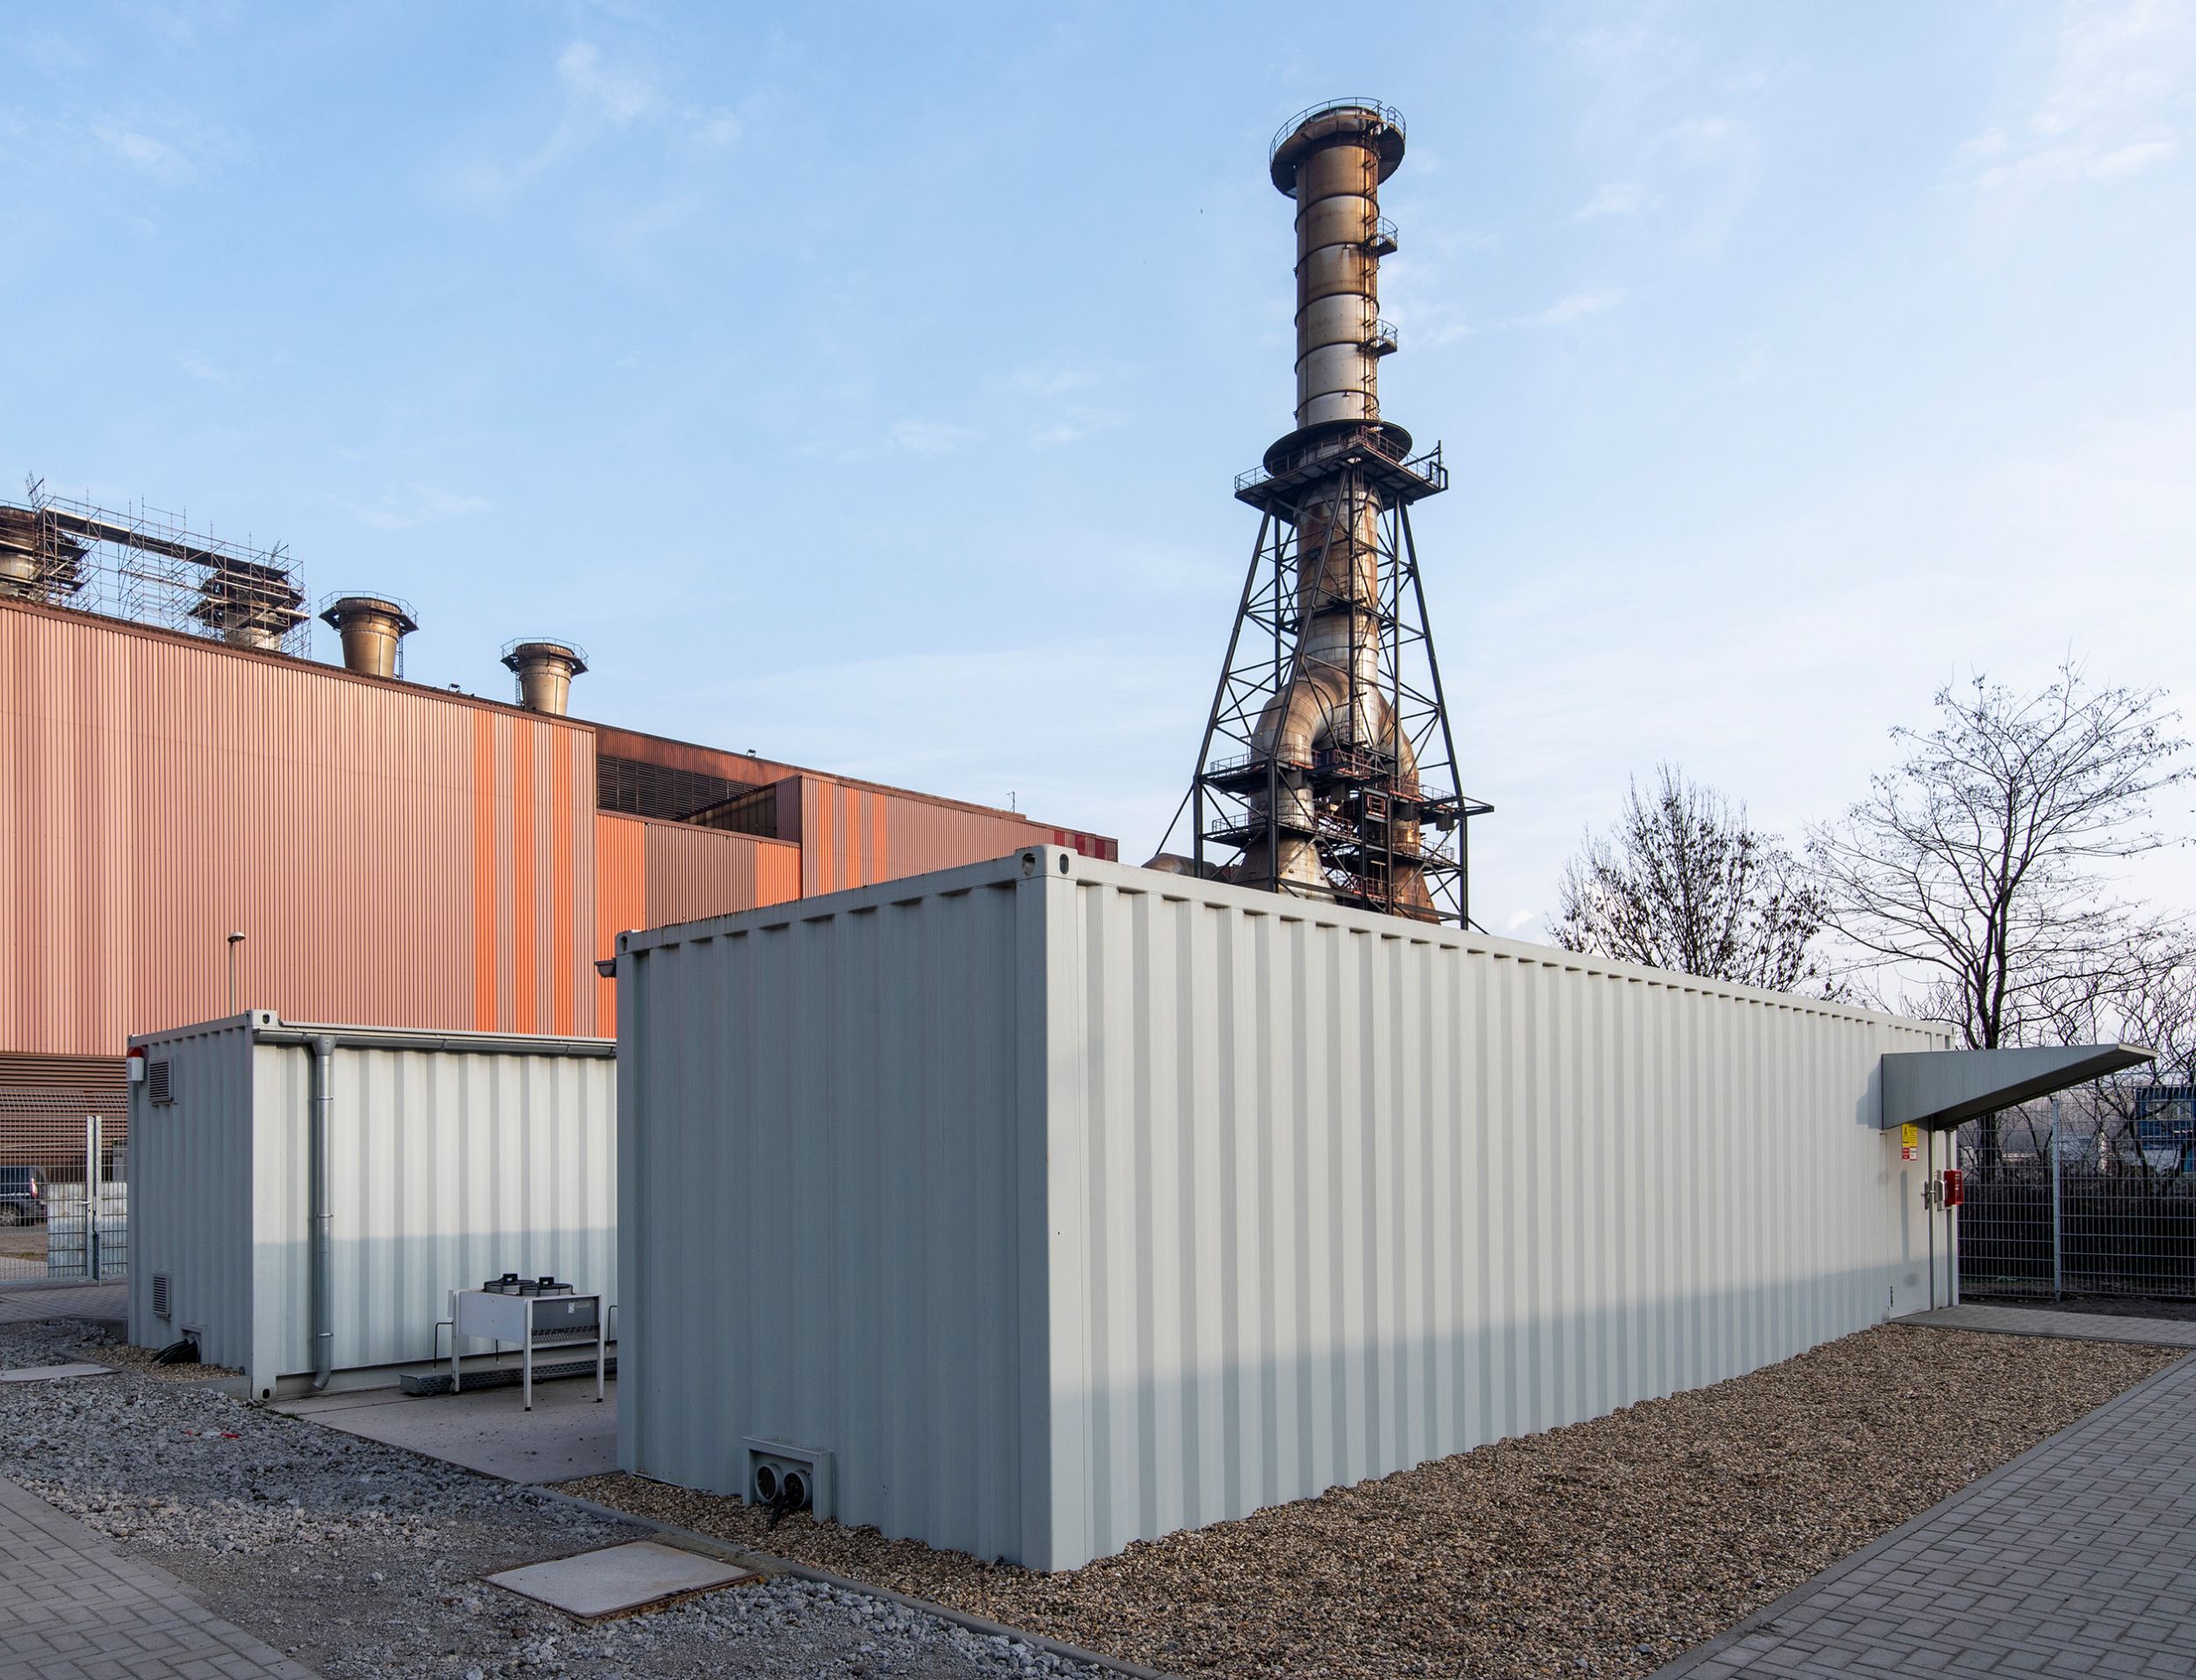 Die standardisierten Data Center Container von Rittal unterstützen Thyssenkrupp Steel bei der Digitalisierung produktionsnaher Prozesse. (Bild: Rittal GmbH & Co. KG)